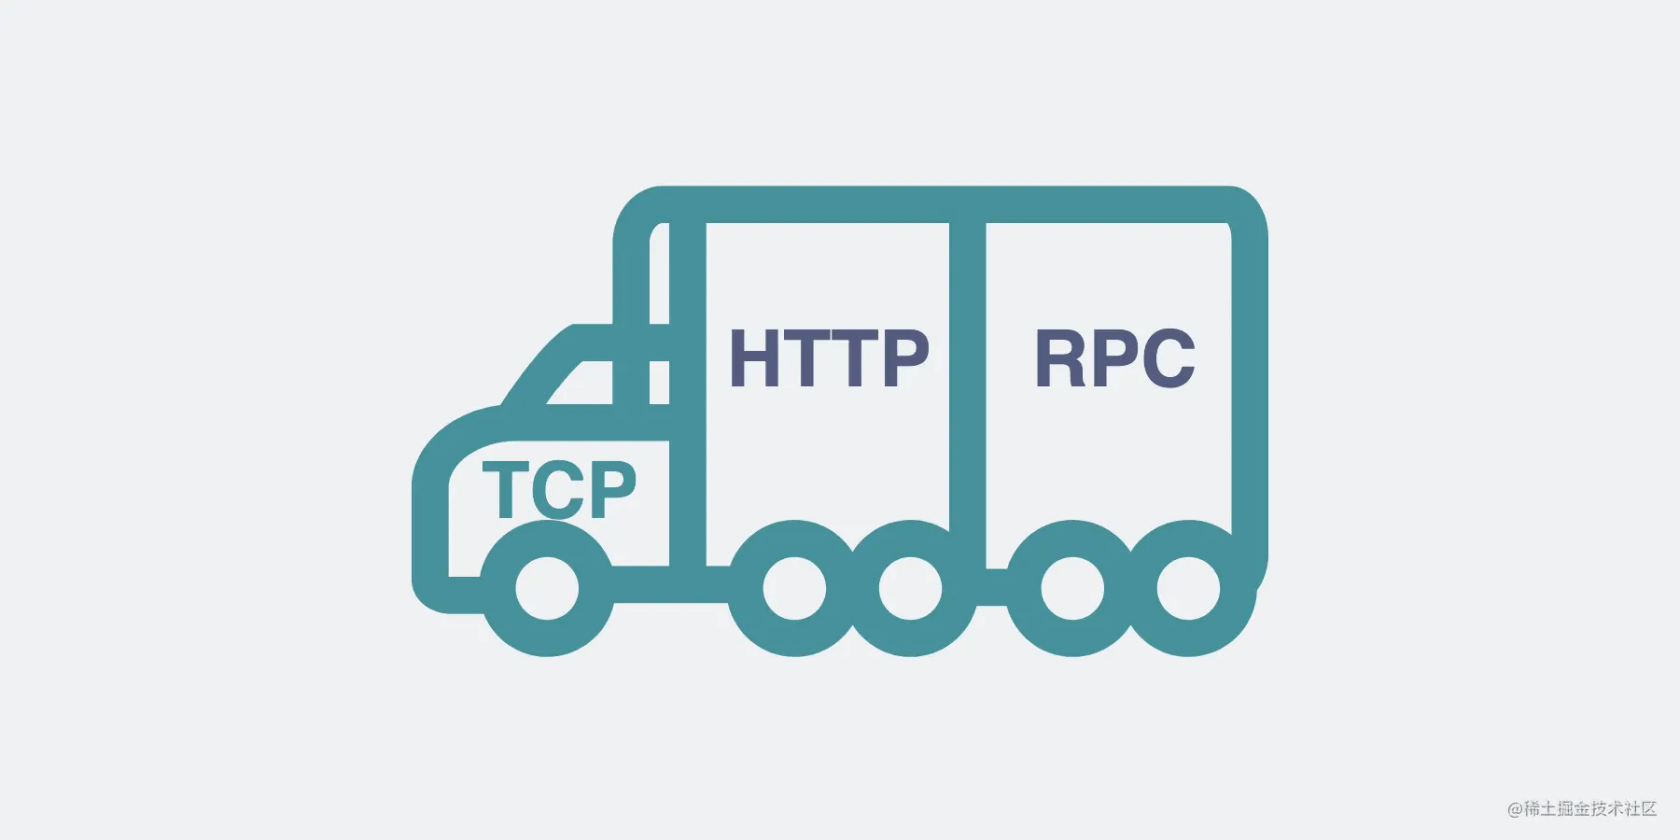 基于TCP协议的HTTP和RPC协议